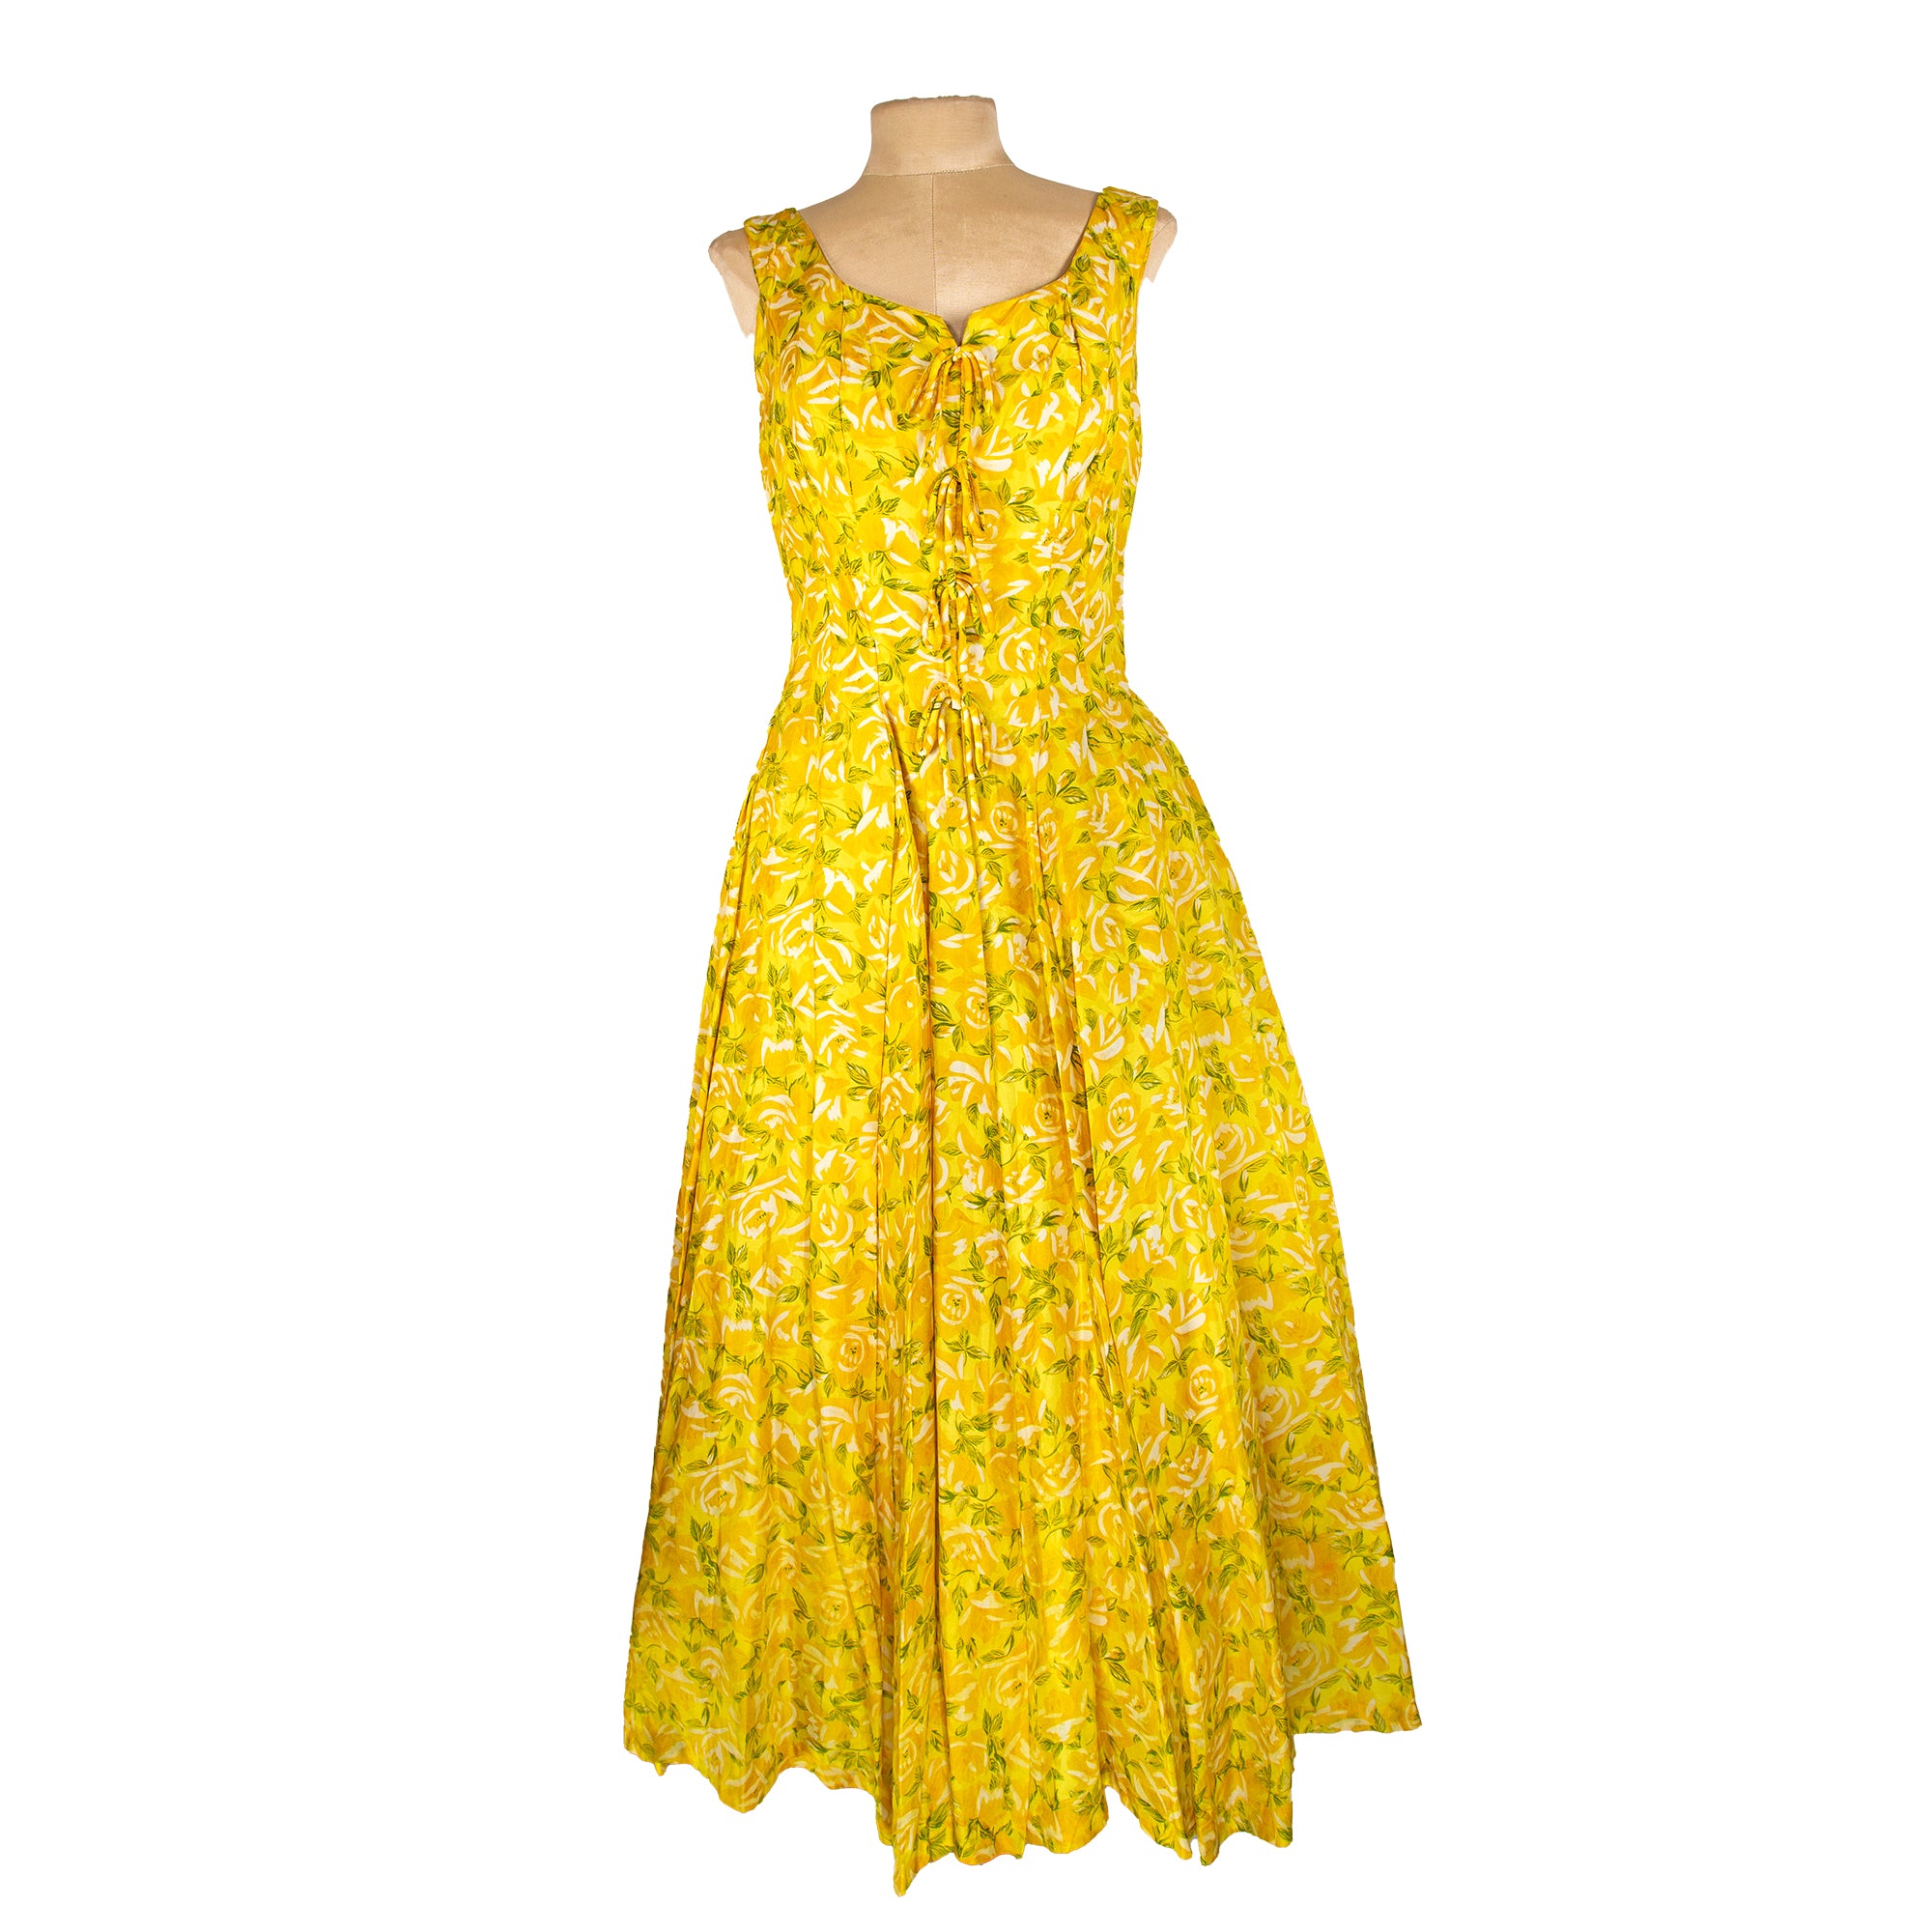 1950s Suzy Perette Yellow Rose Garden Silk Dress⁠